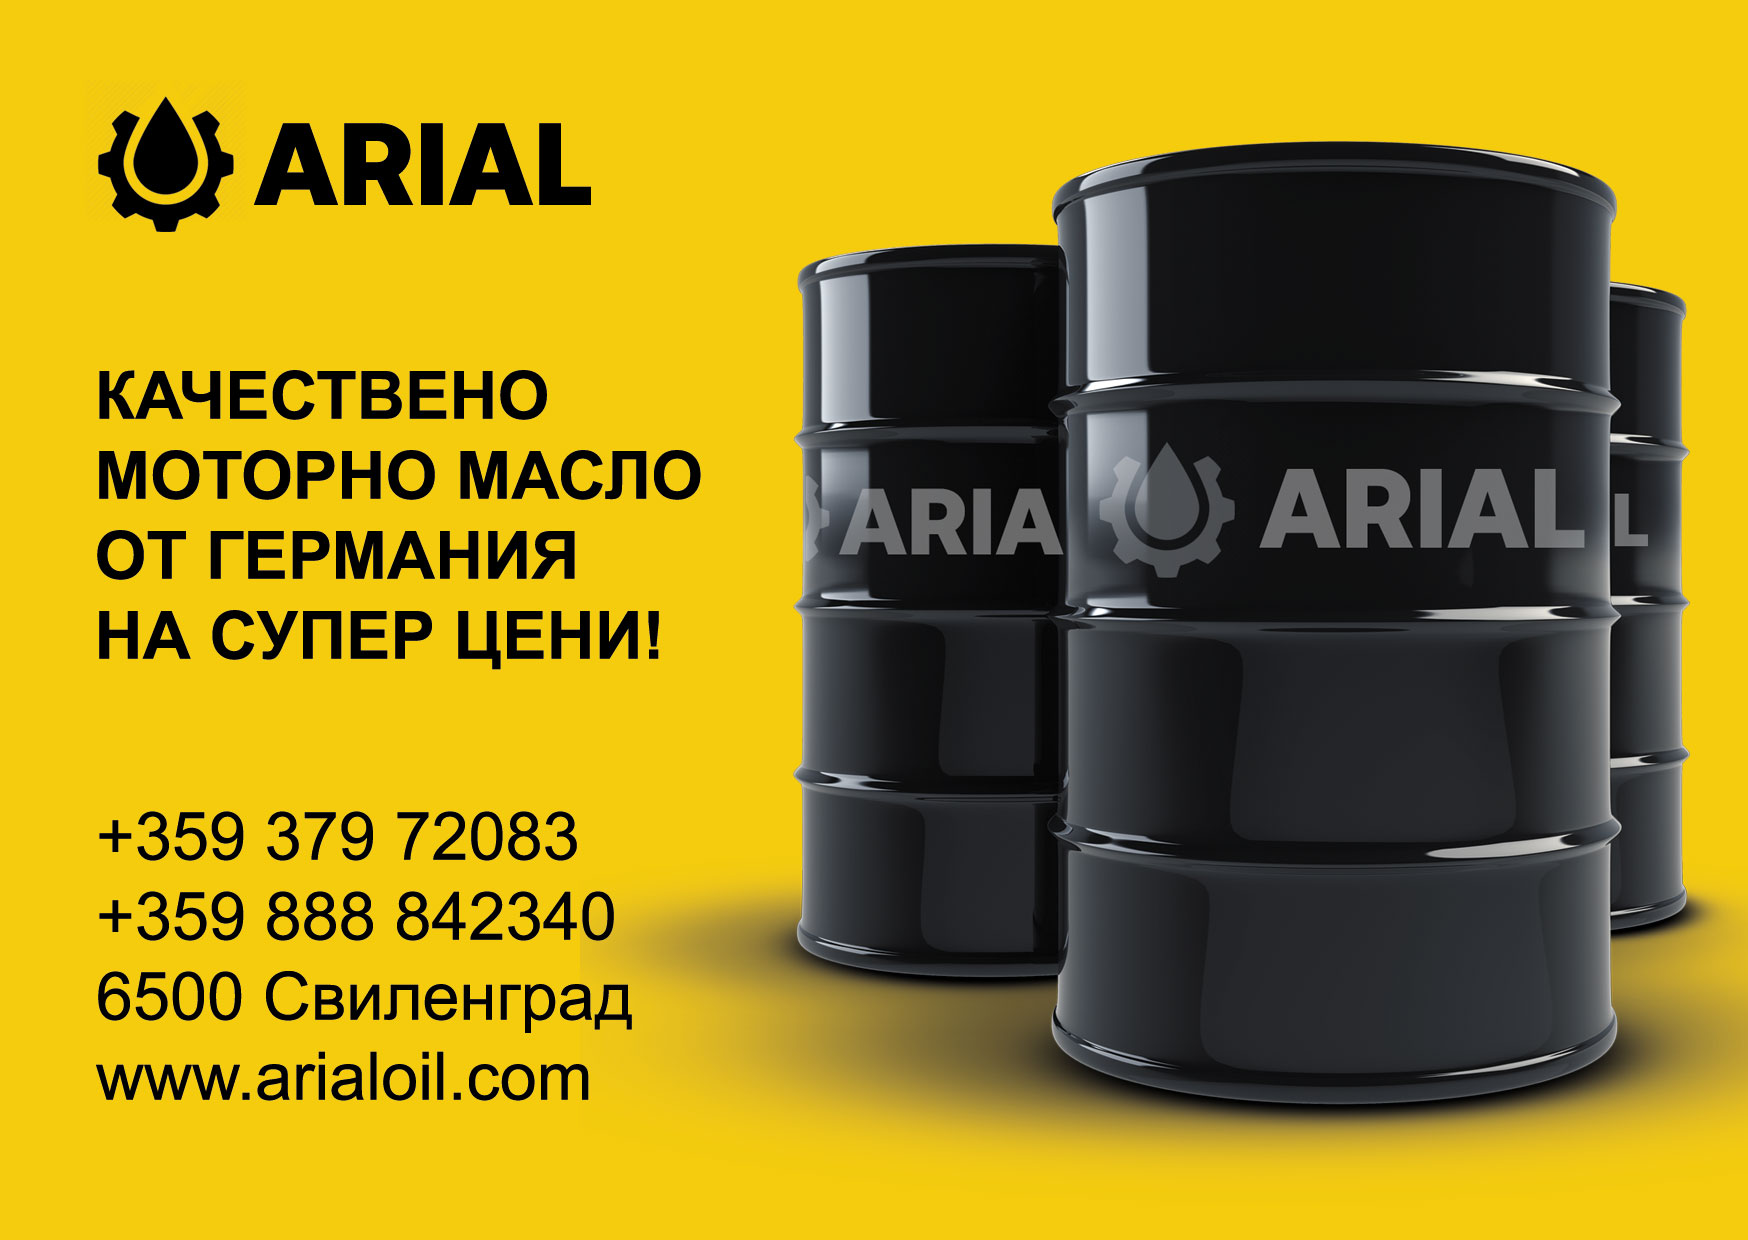 Моторное масло для грузового автомобиля марки ARIAL: какое лучше выбрать